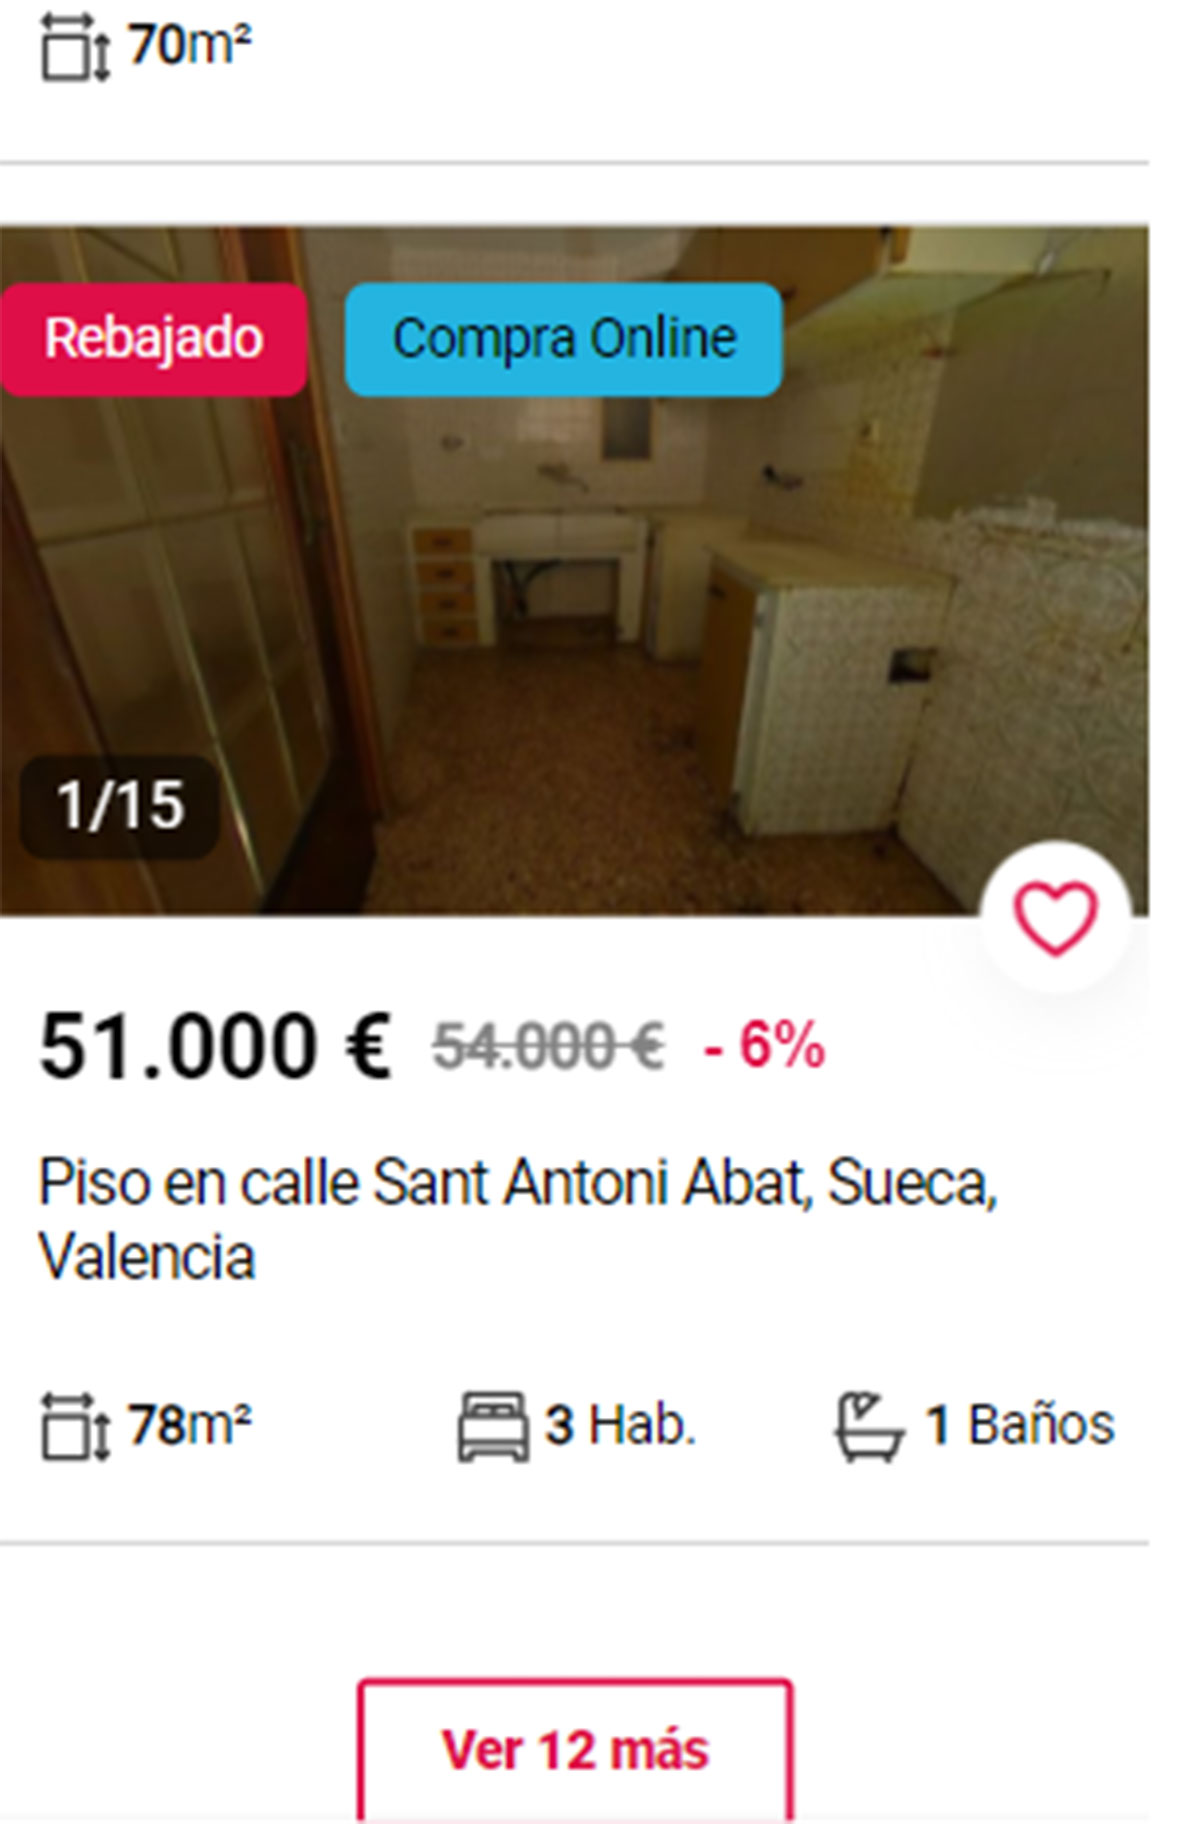 Piso en Valencia por 51.000 euros